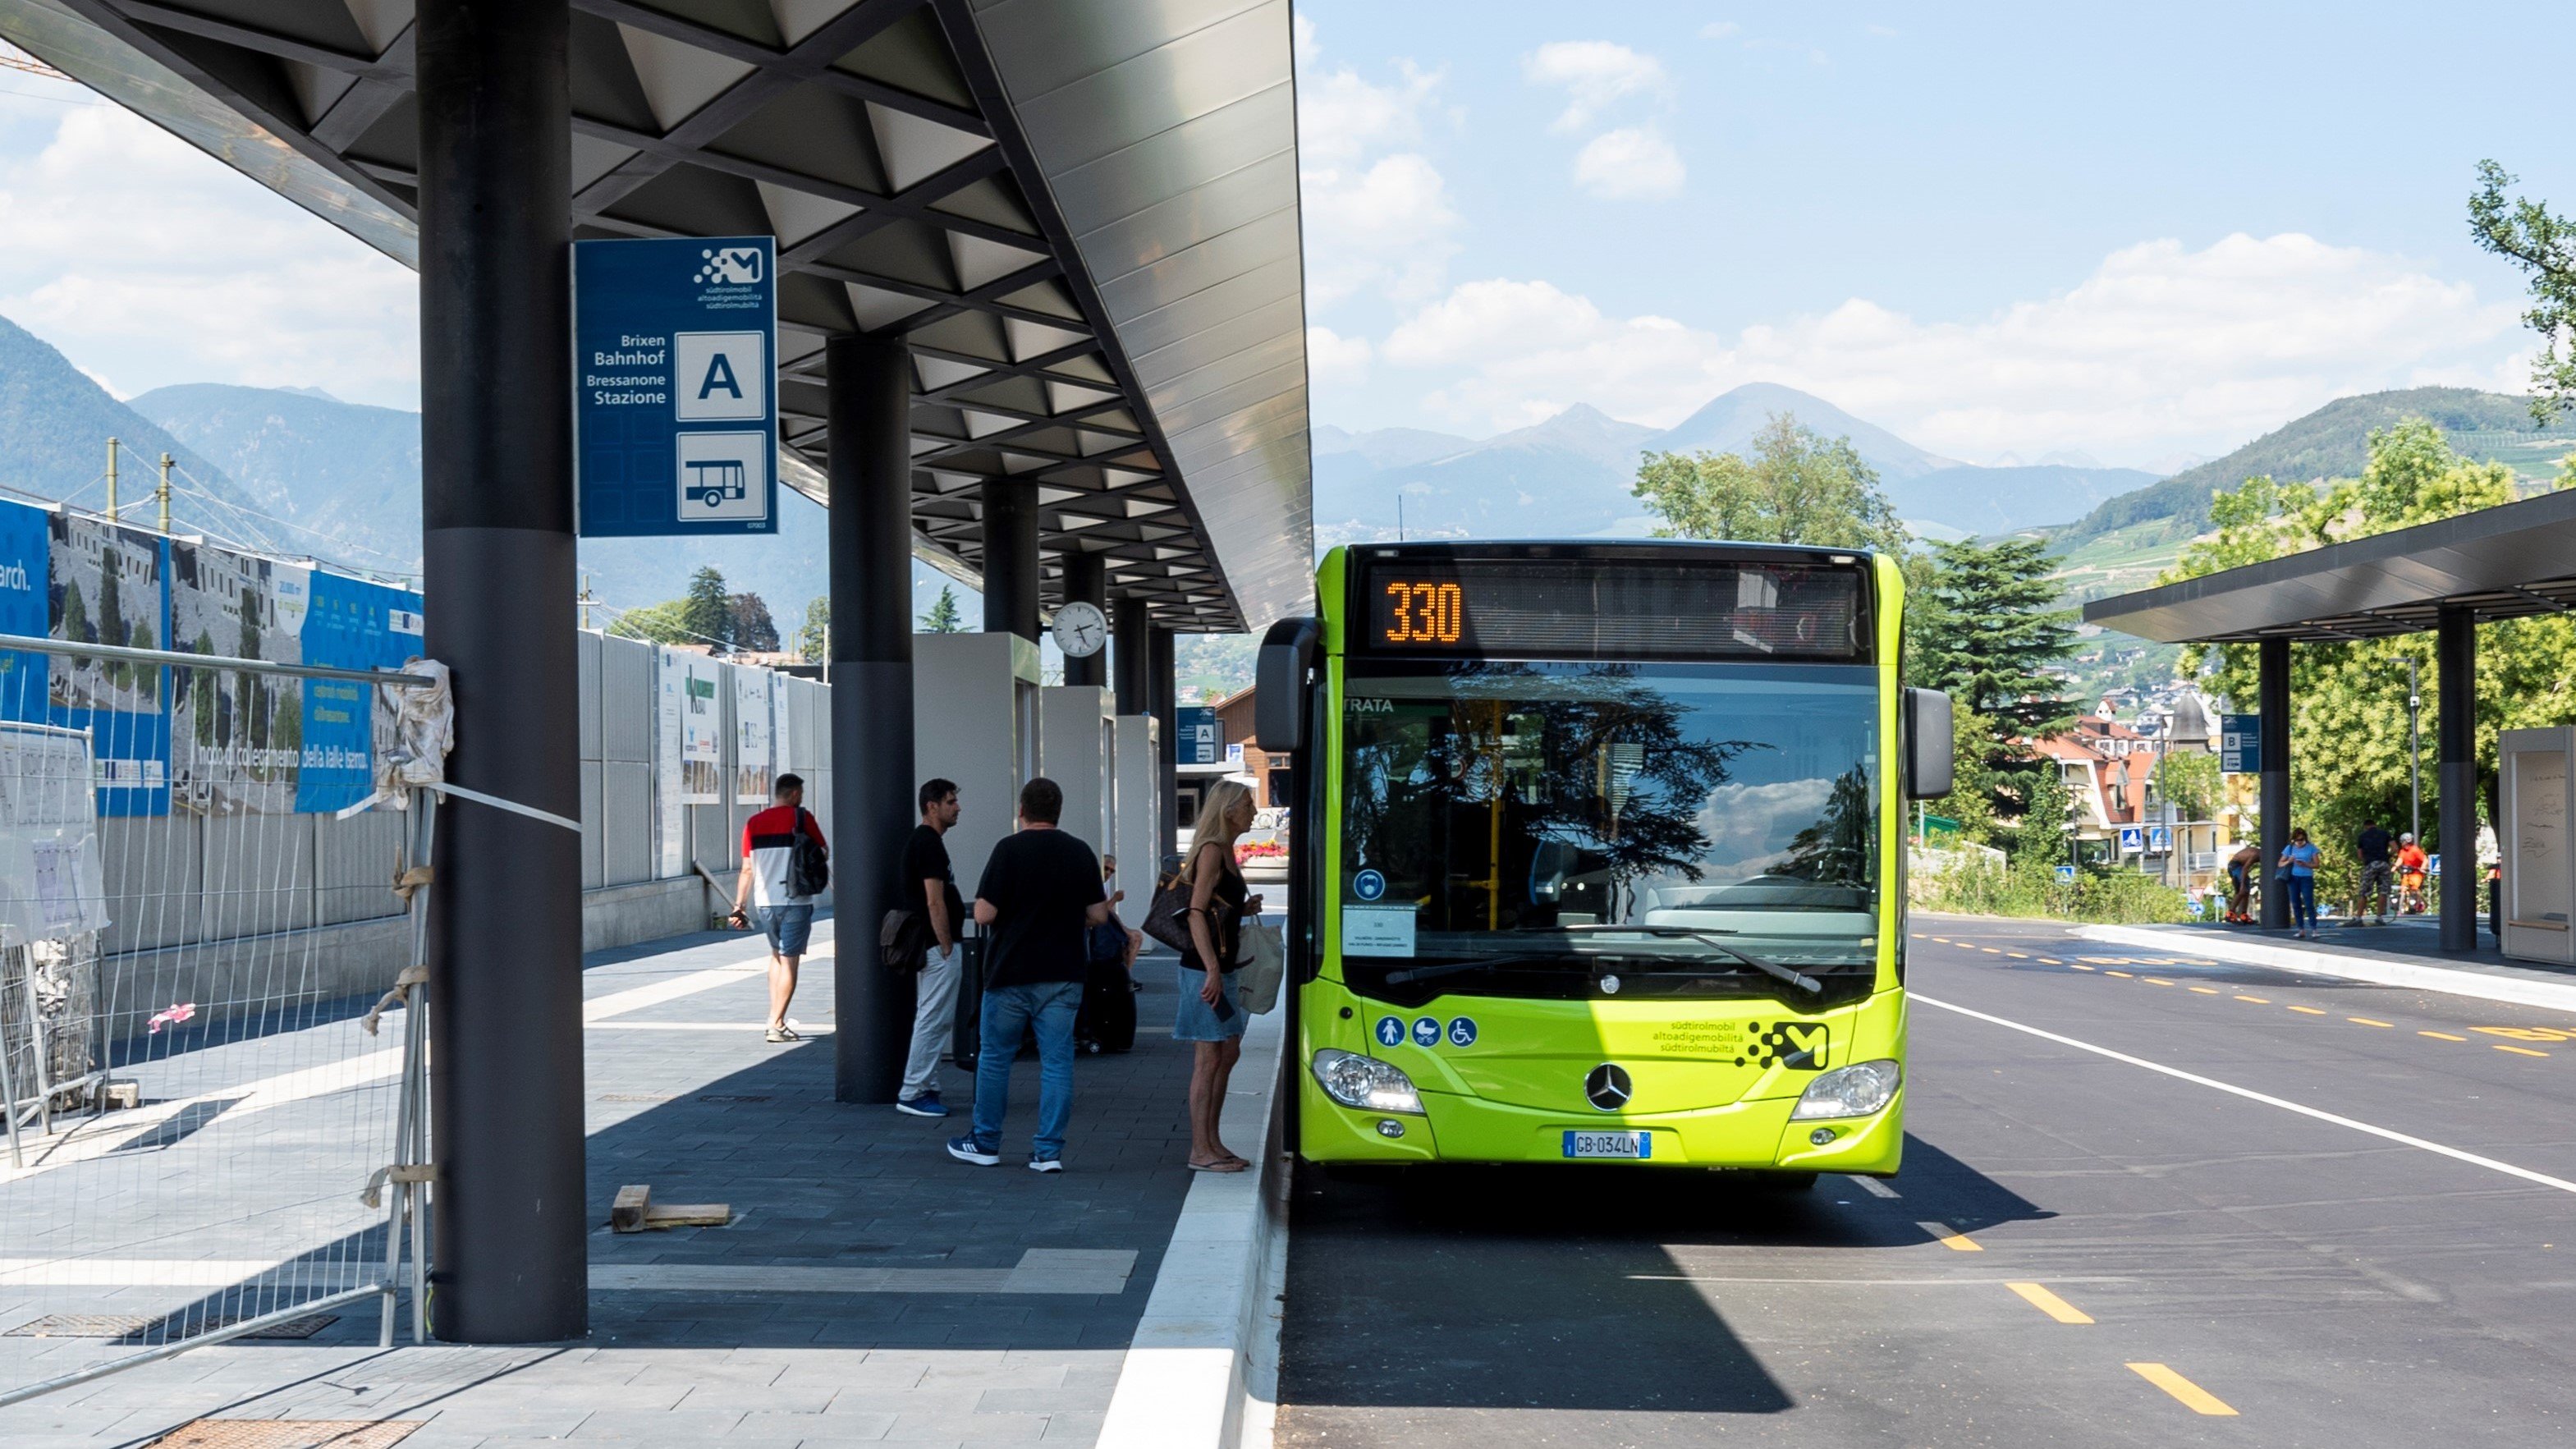 The new Mobility Centre a Bressanone/Brixen